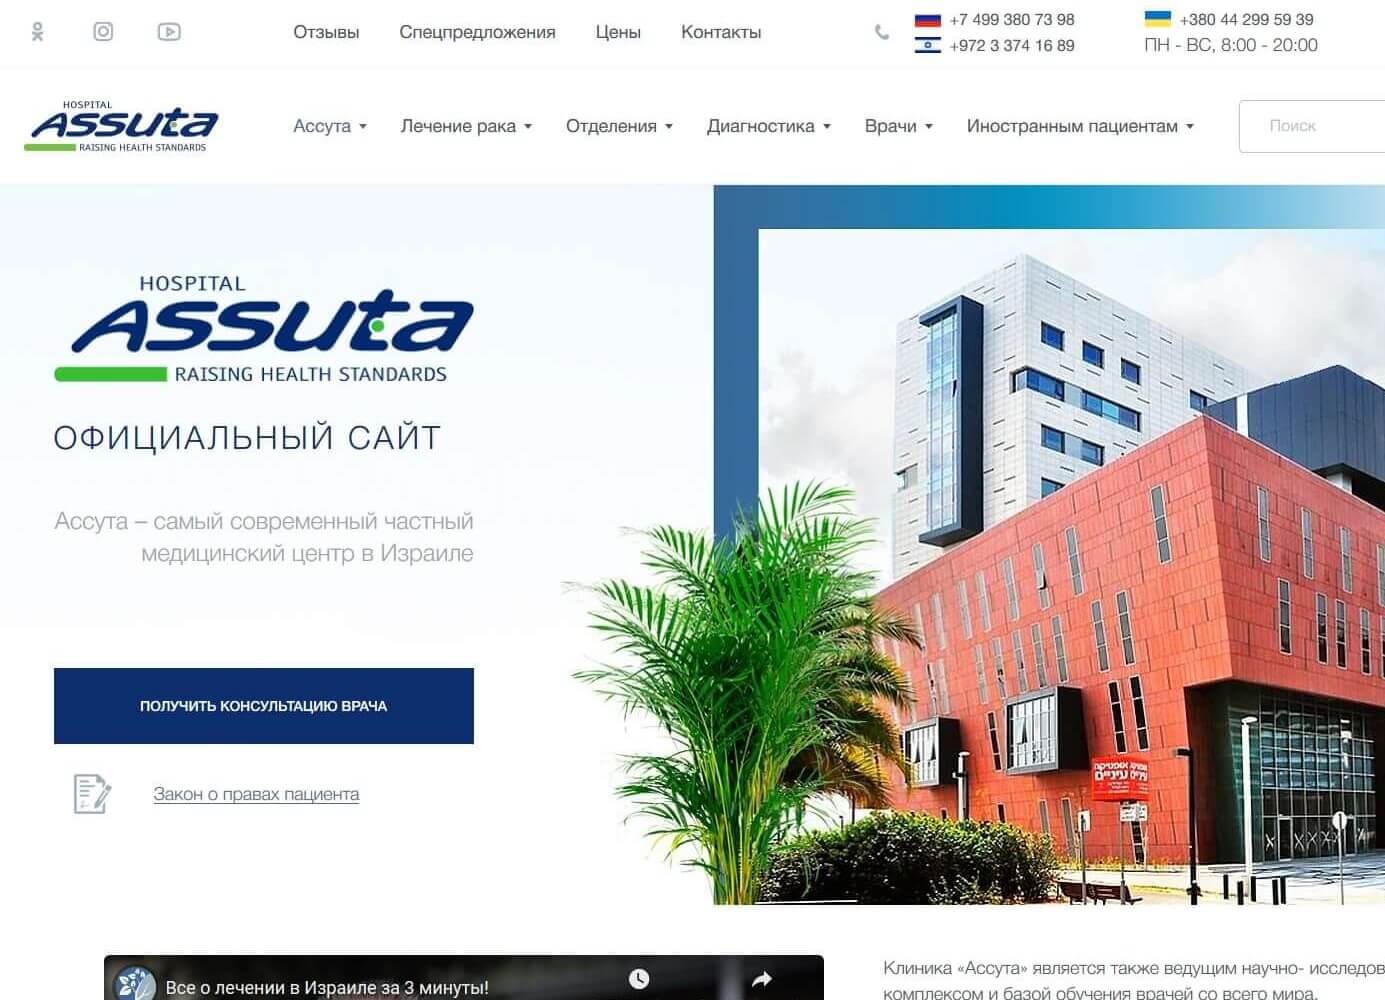 Корпоративный сайт - Assuta Express Medical